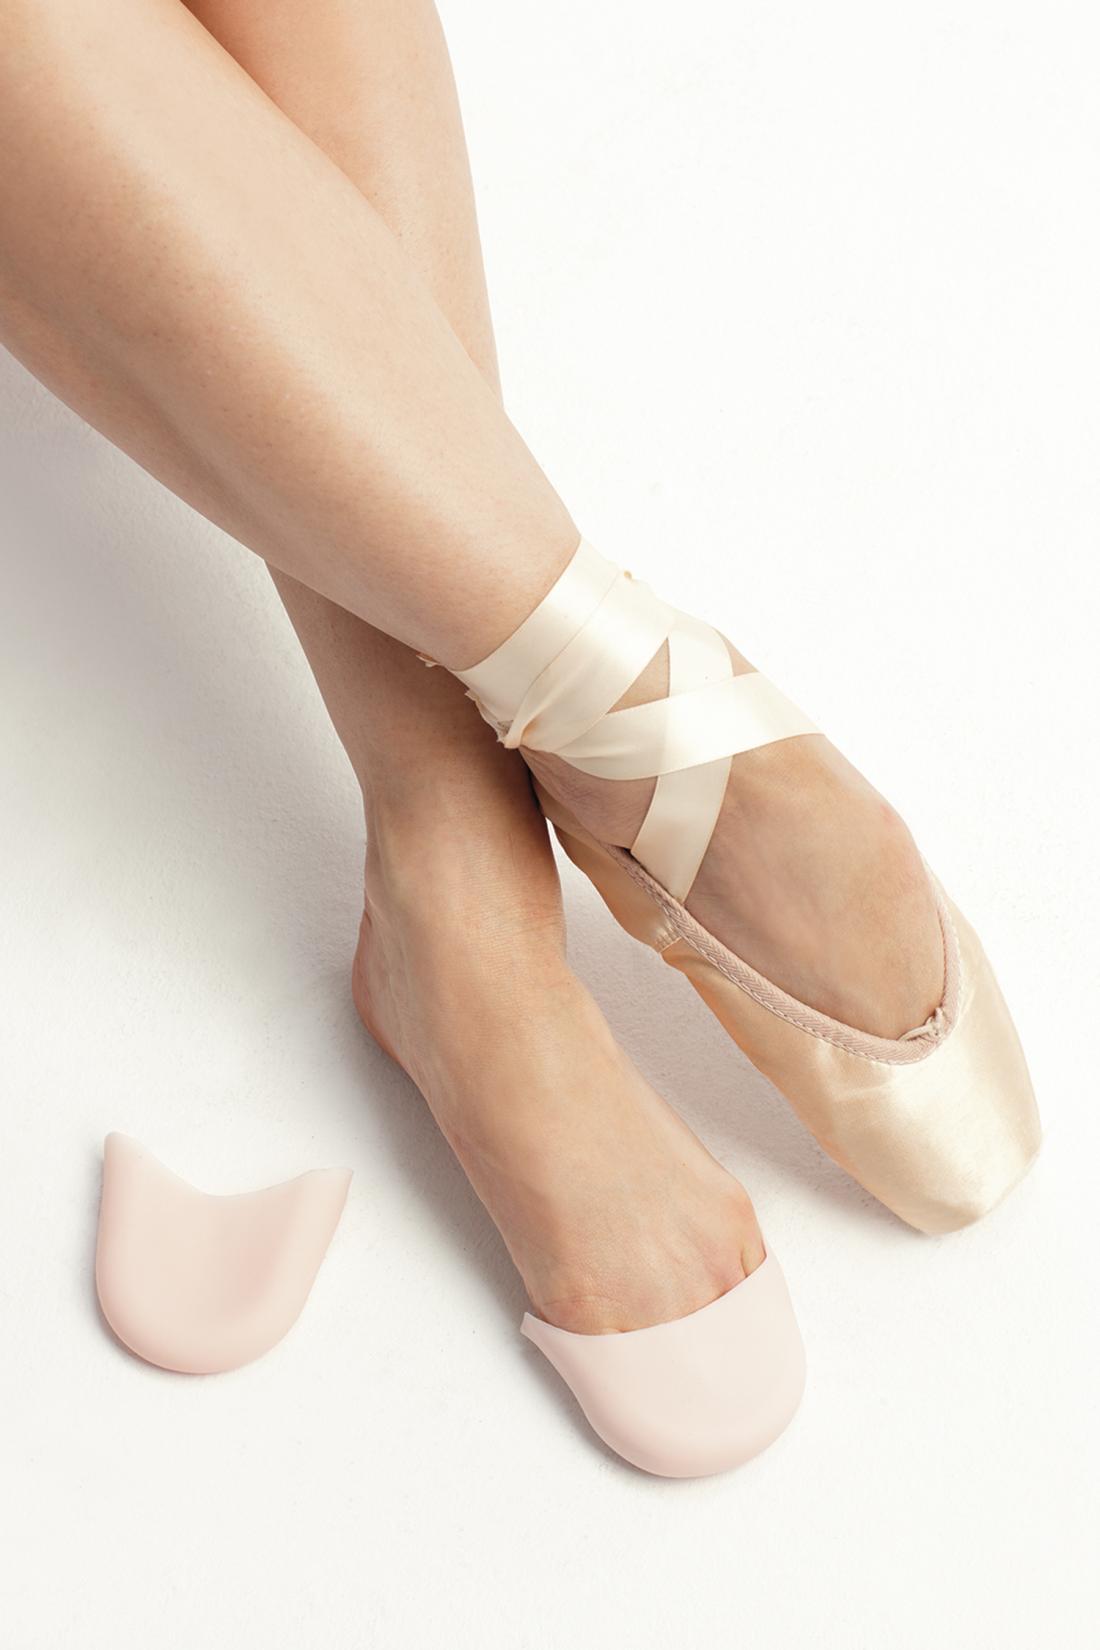 Intermezzo Pointe Shoes Silicone Toe Pads Intermezzo ballet